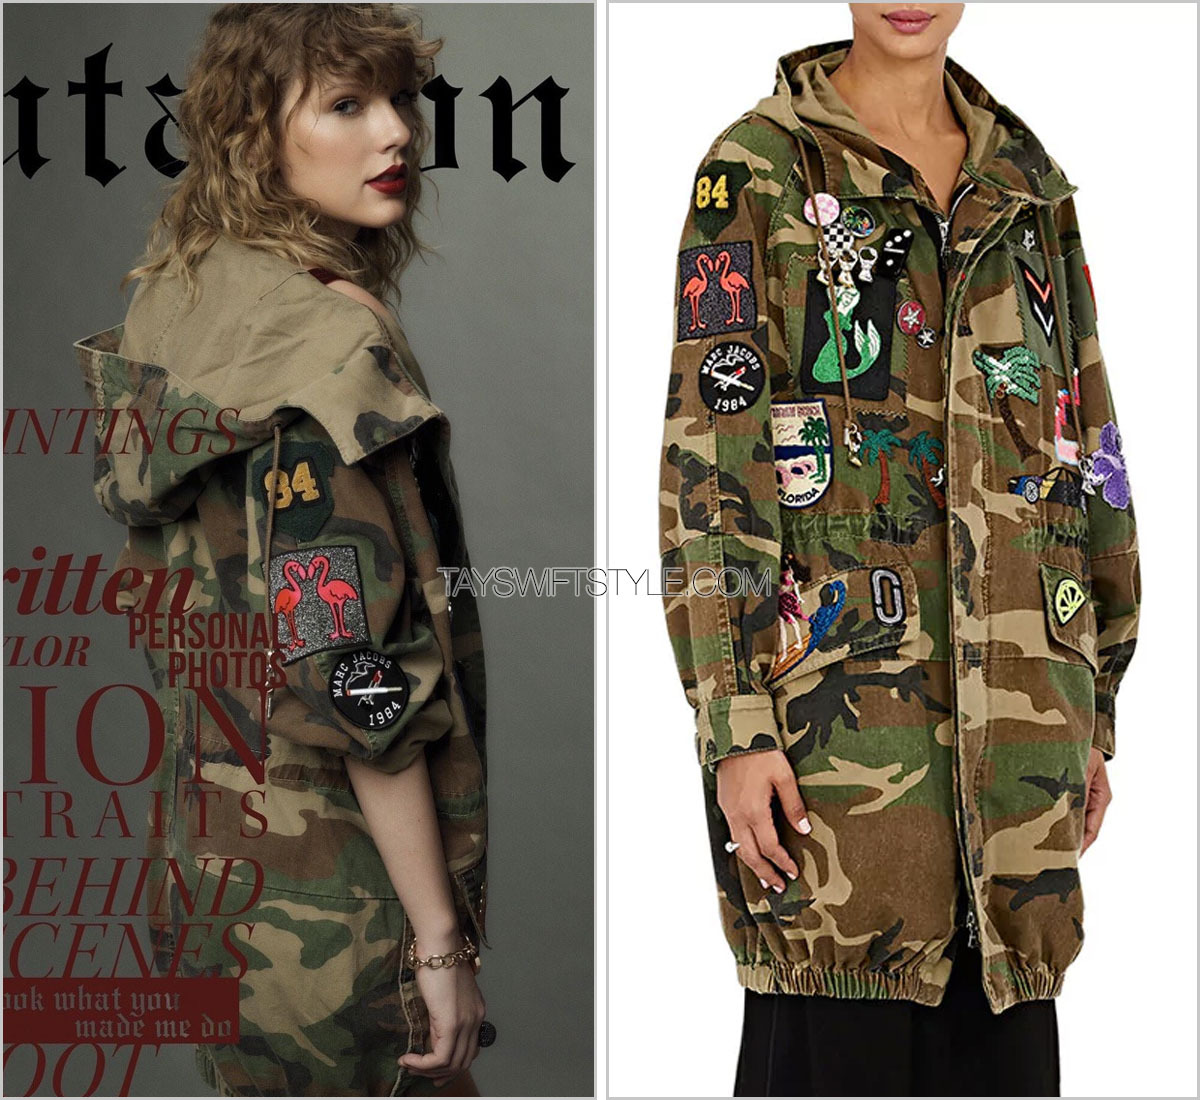 Taylor Swift Street Style: Reputation Era Candids - kimbermoose